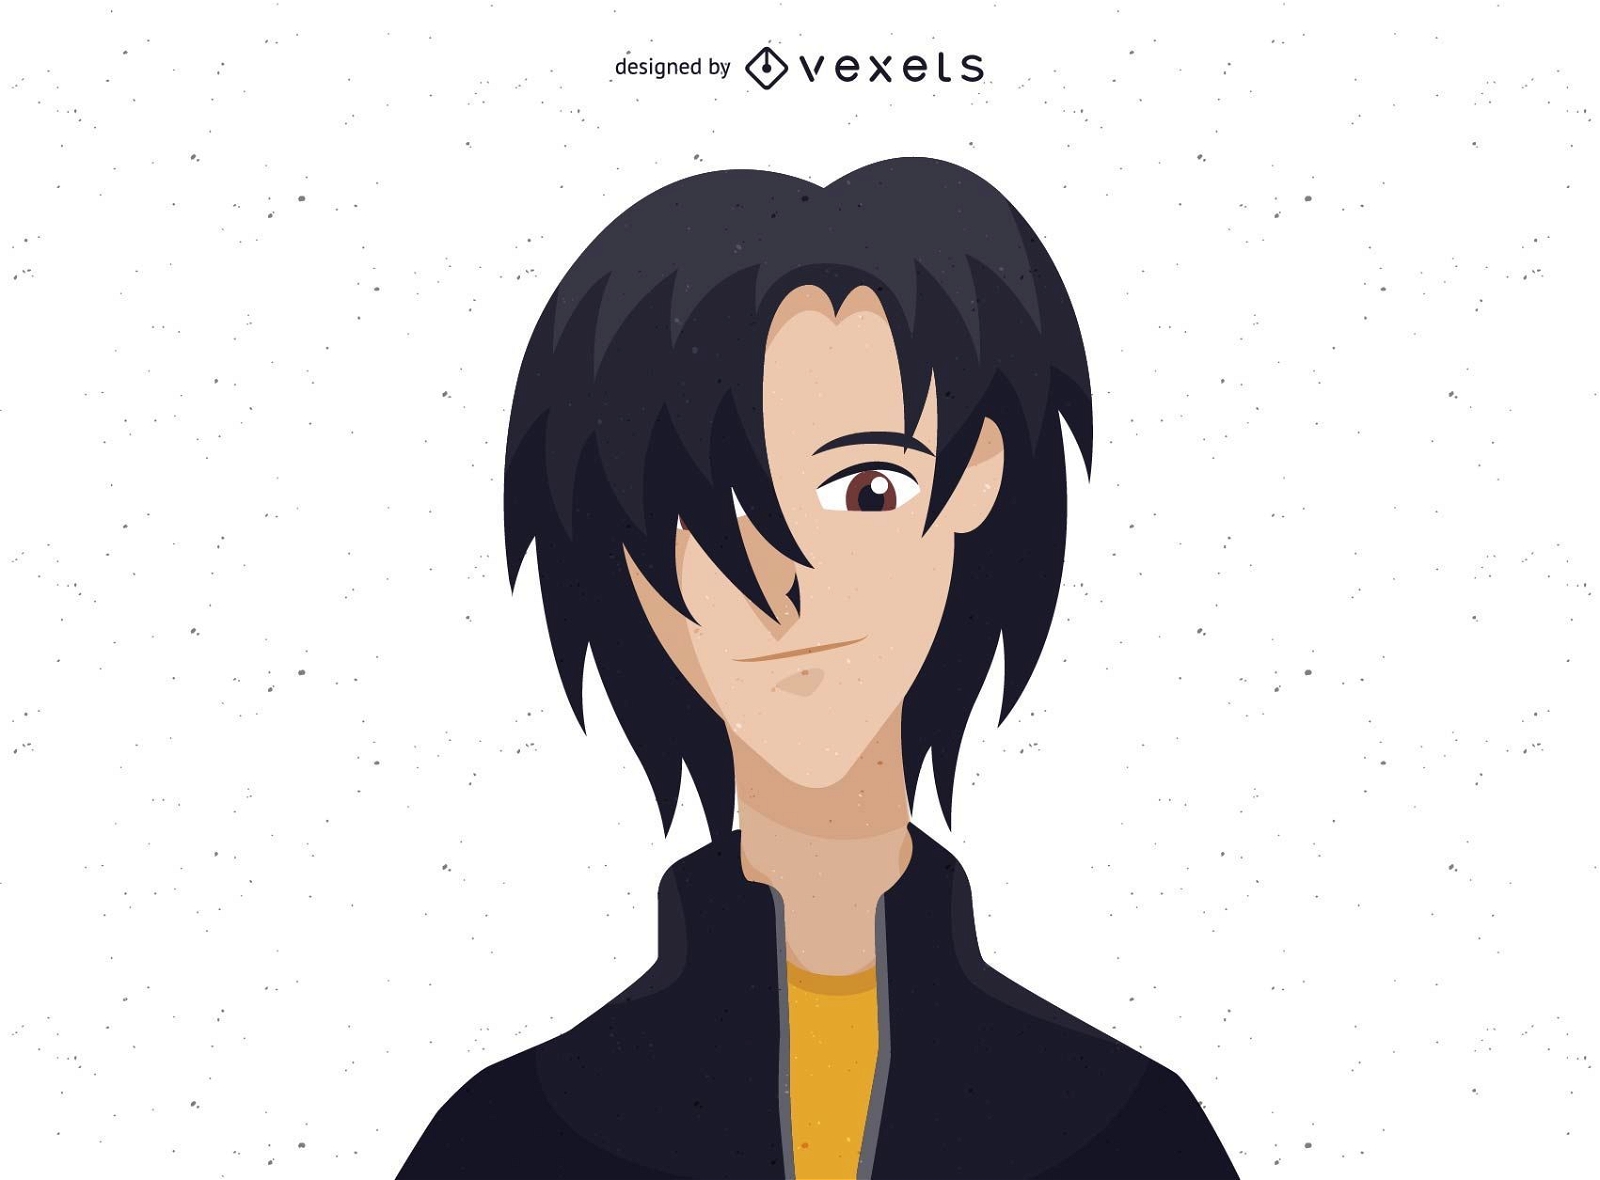 Garoto personagem de anime com cabelo preto